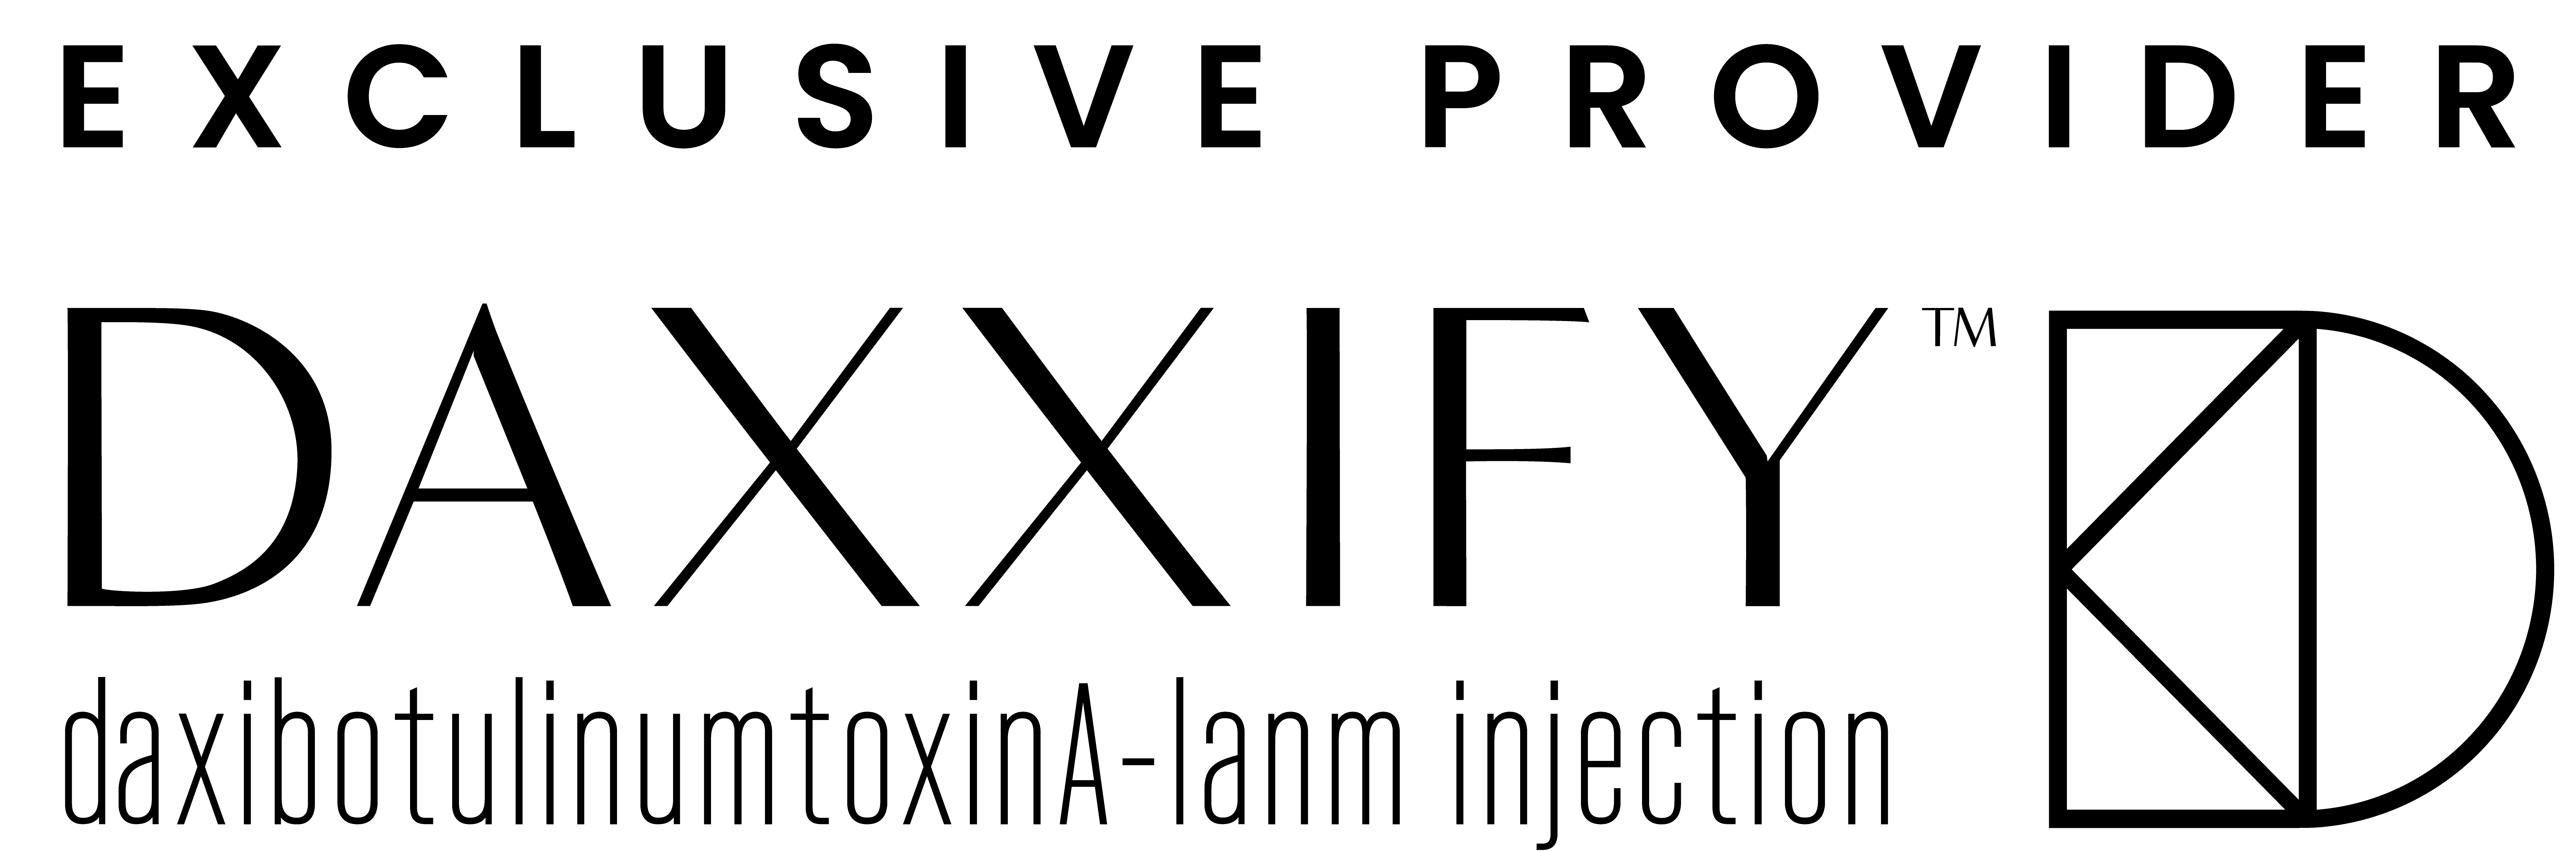 daxxify logo